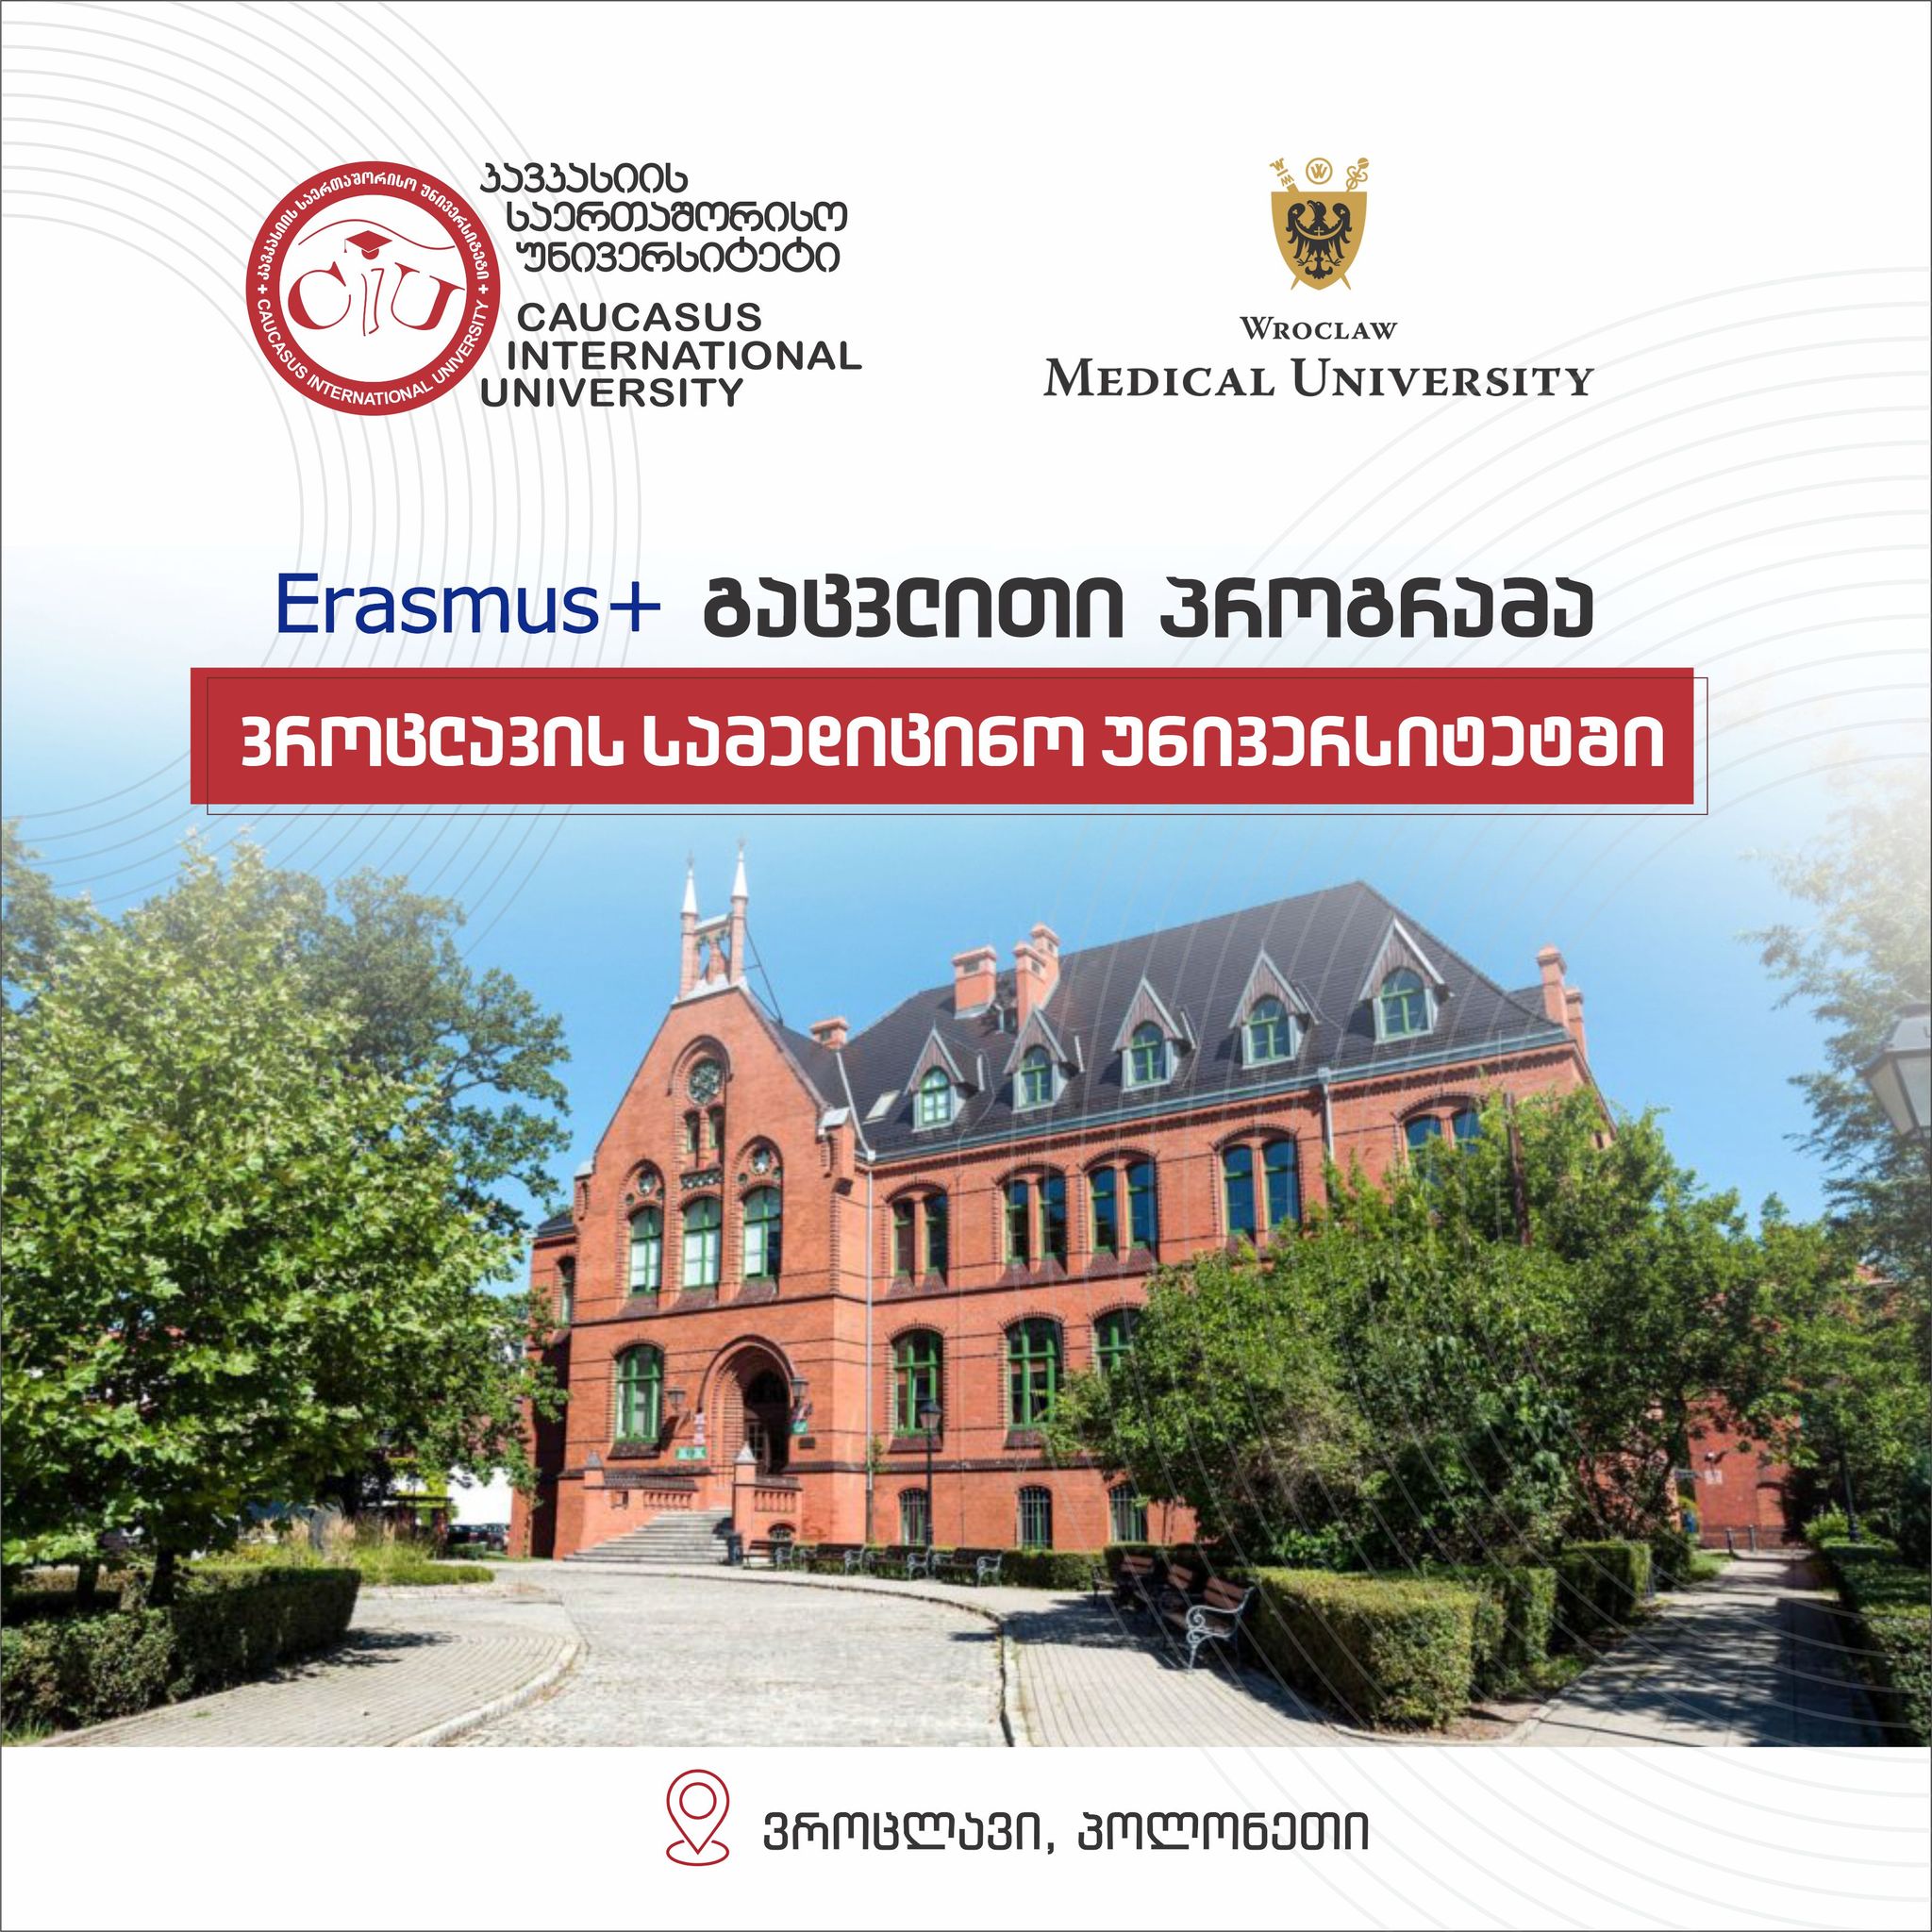 Erasmus+ გაცვლითი პროგრამა ვროცლავის სამედიცინო უნივერსიტეტში (ვროცლავი, პოლონეთი)